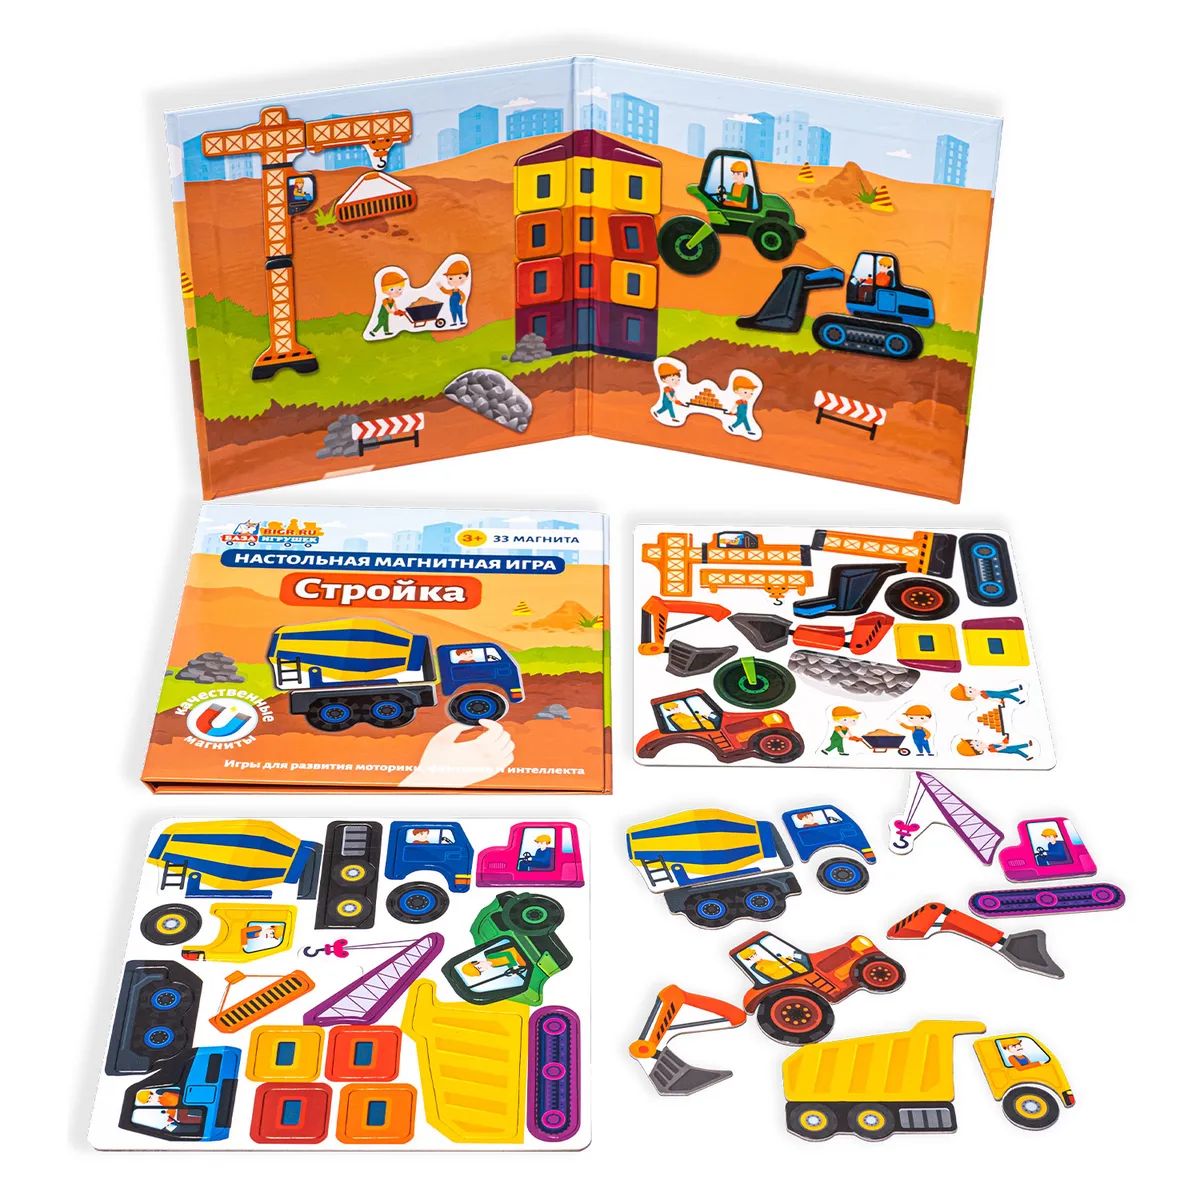 Магнитная игра для детей Бигр Стройка мини, УД62 магнитная игра для детей бигр спецмашинки мини уд60